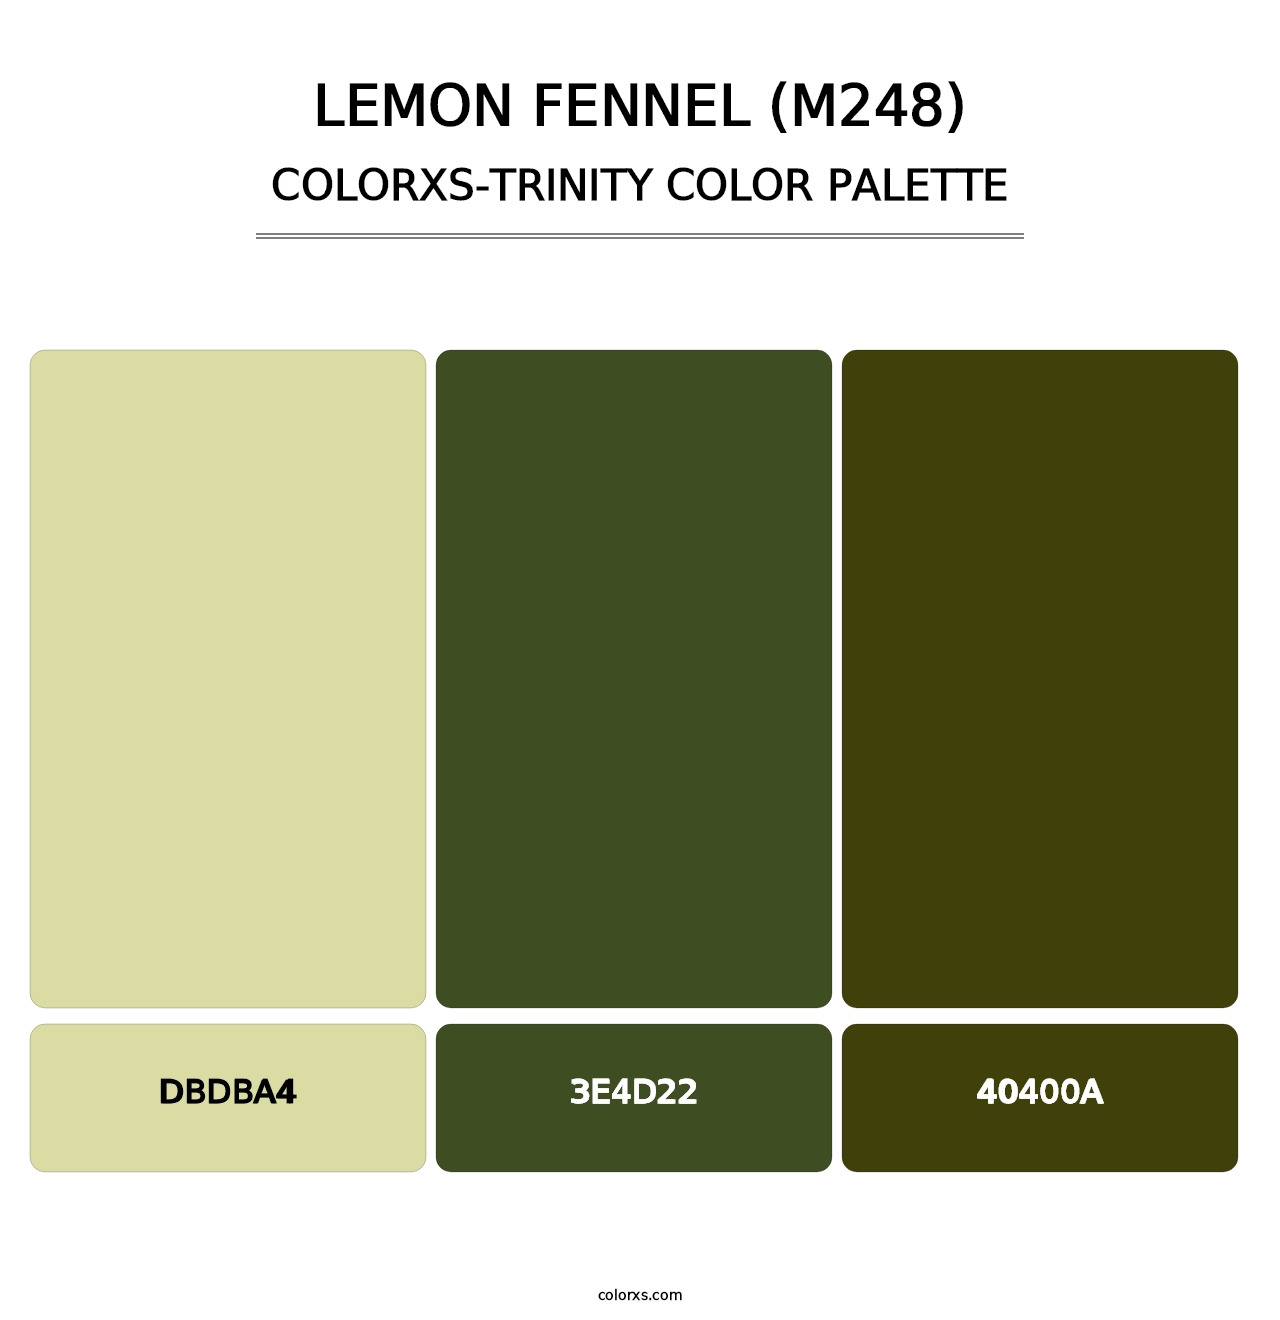 Lemon Fennel (M248) - Colorxs Trinity Palette